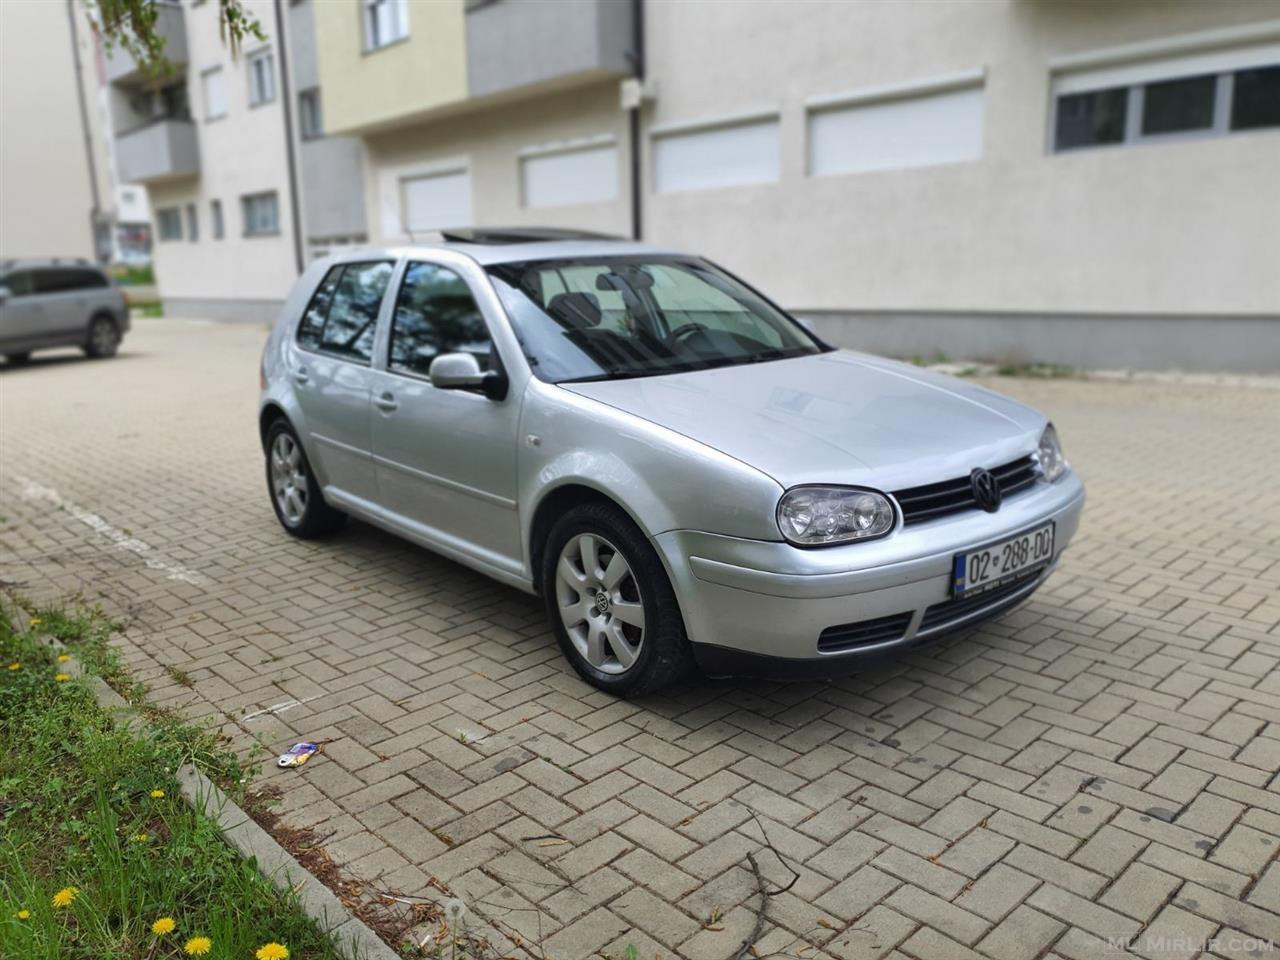 VW Golf 4 1.9Tdi Pacifik 2003 Rks Full 043762109